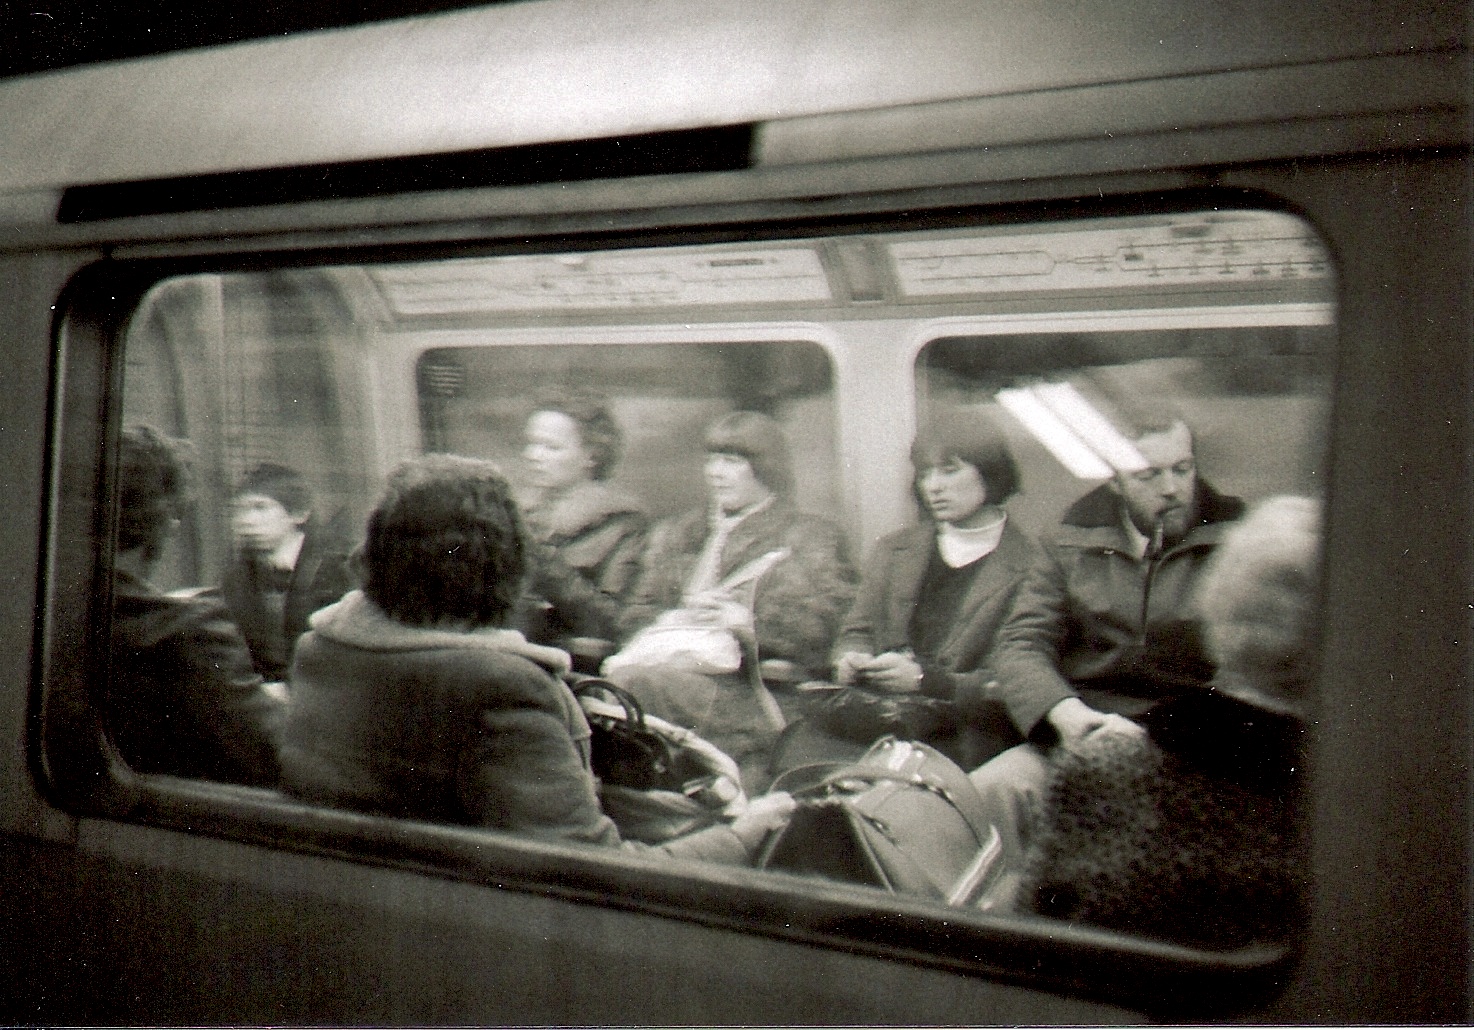 London 1979